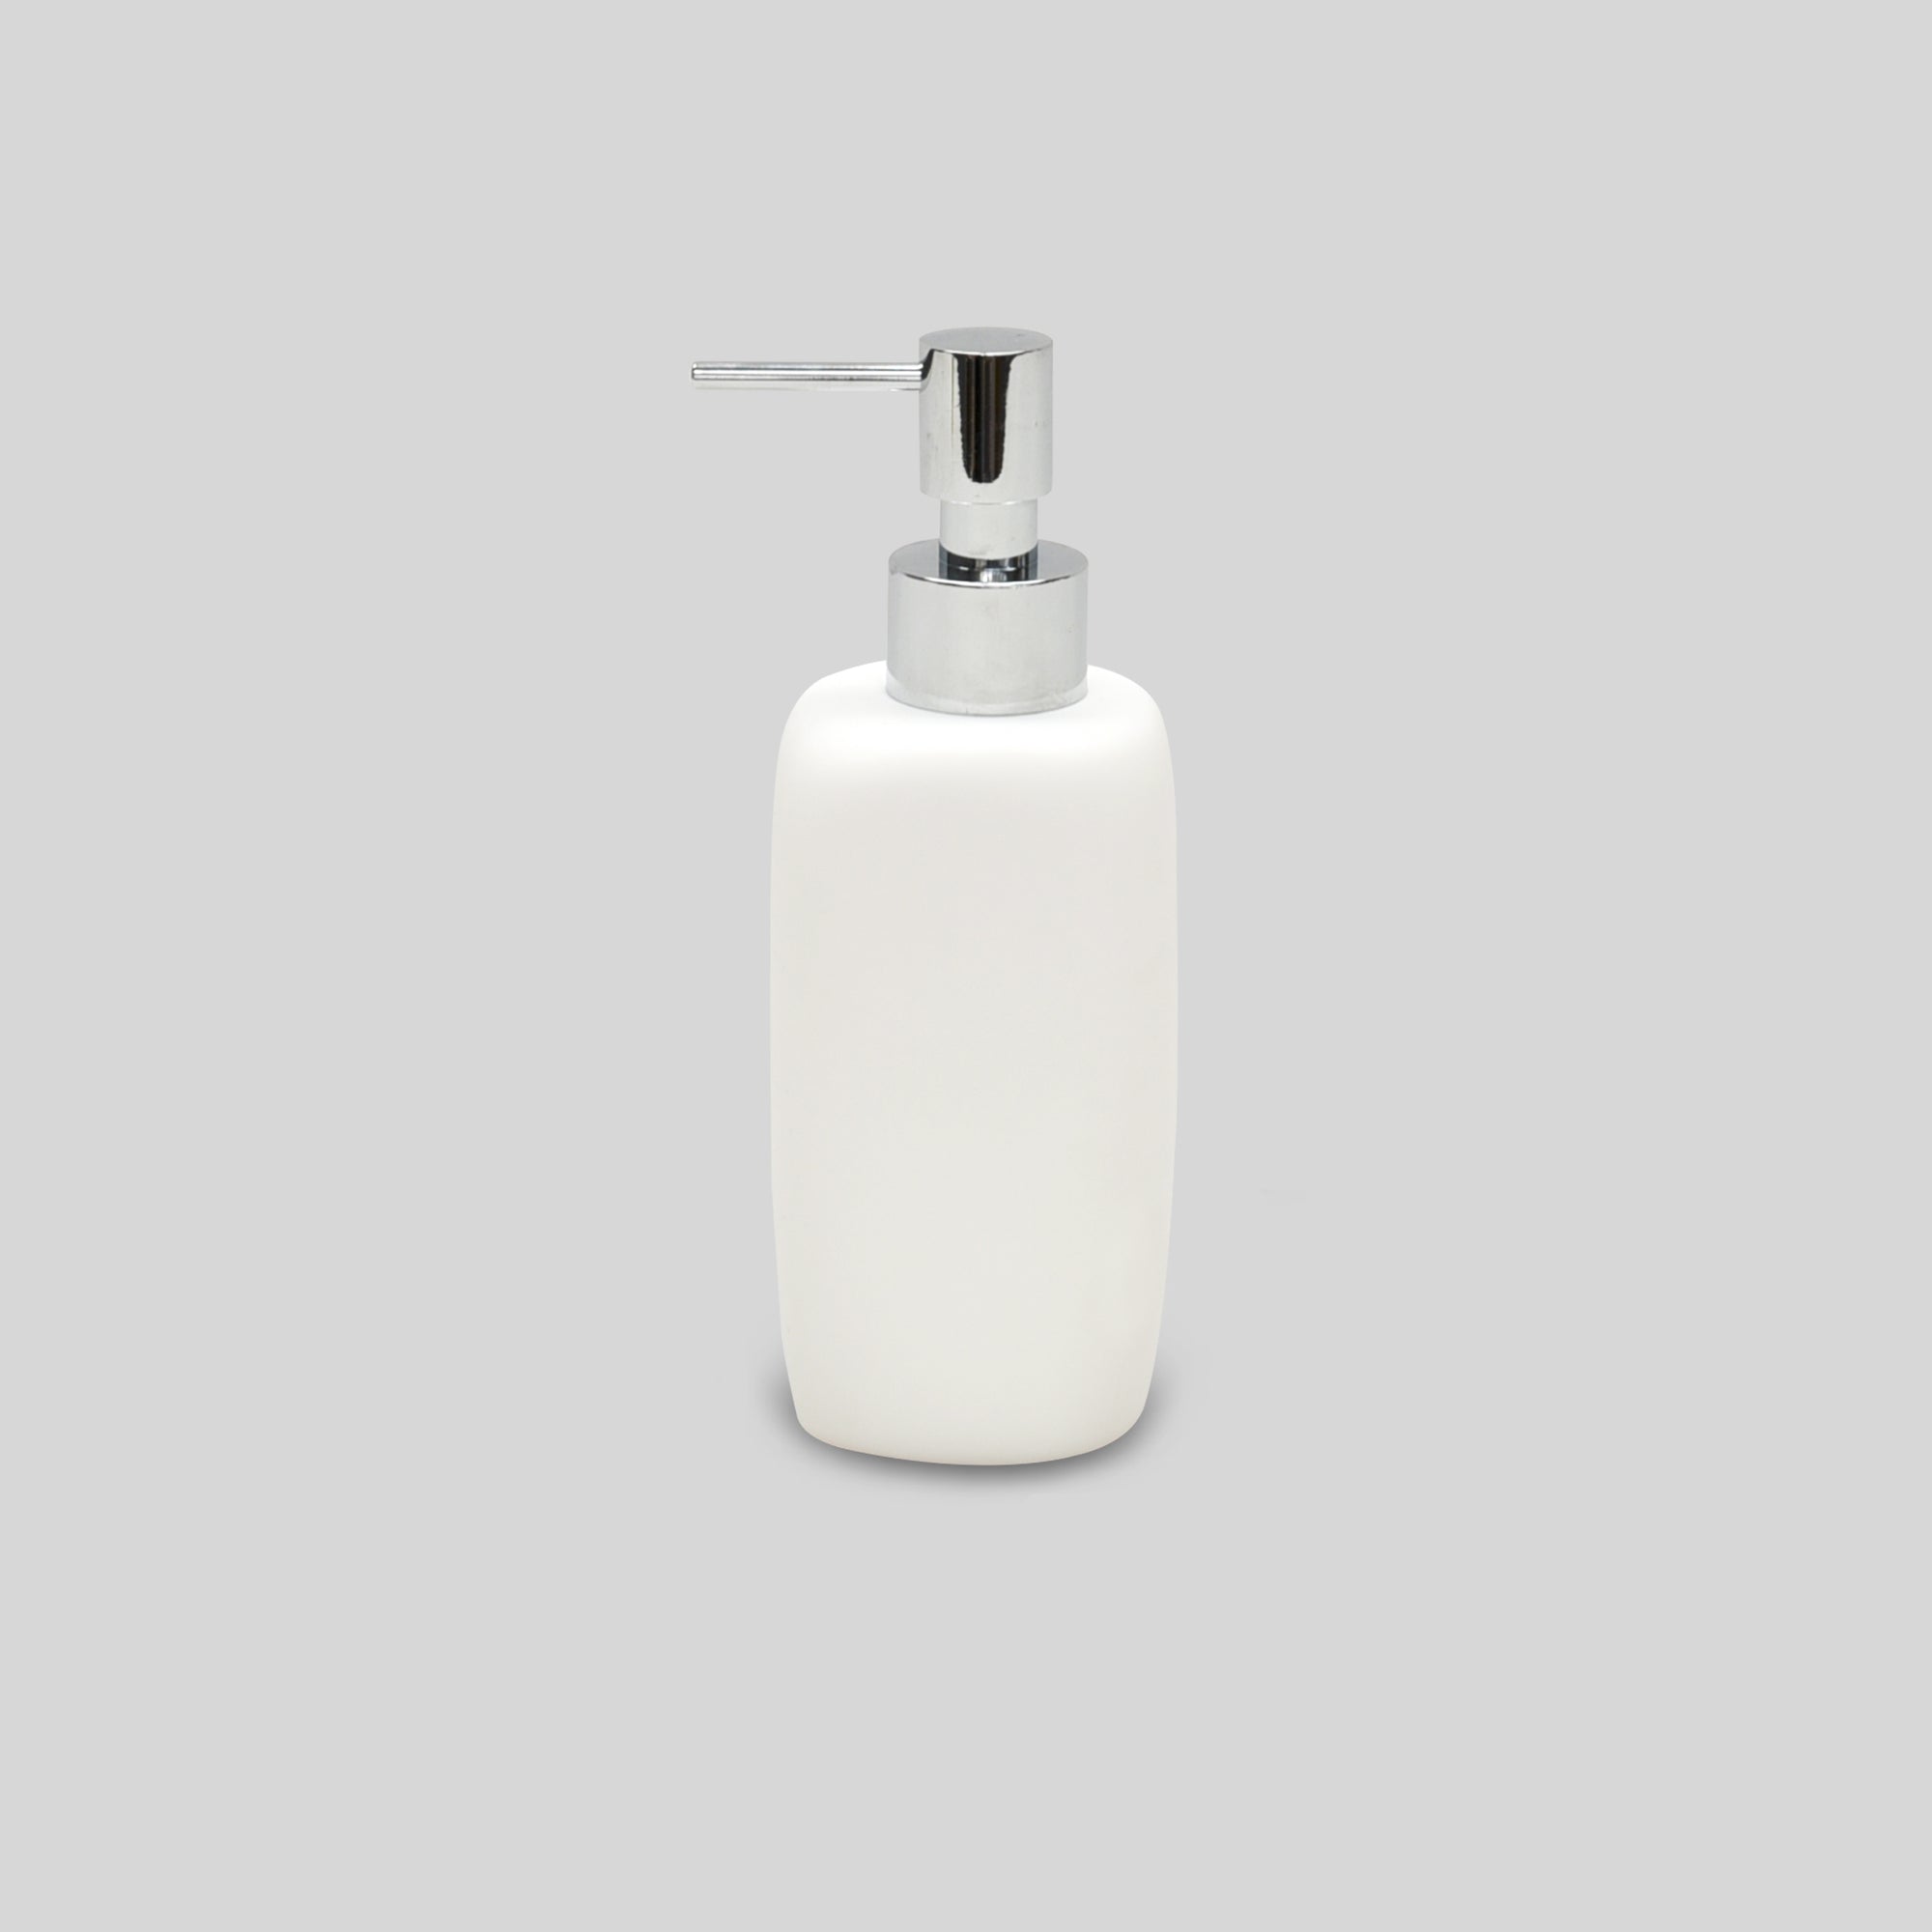 Cuadrado Soap Dispenser- White